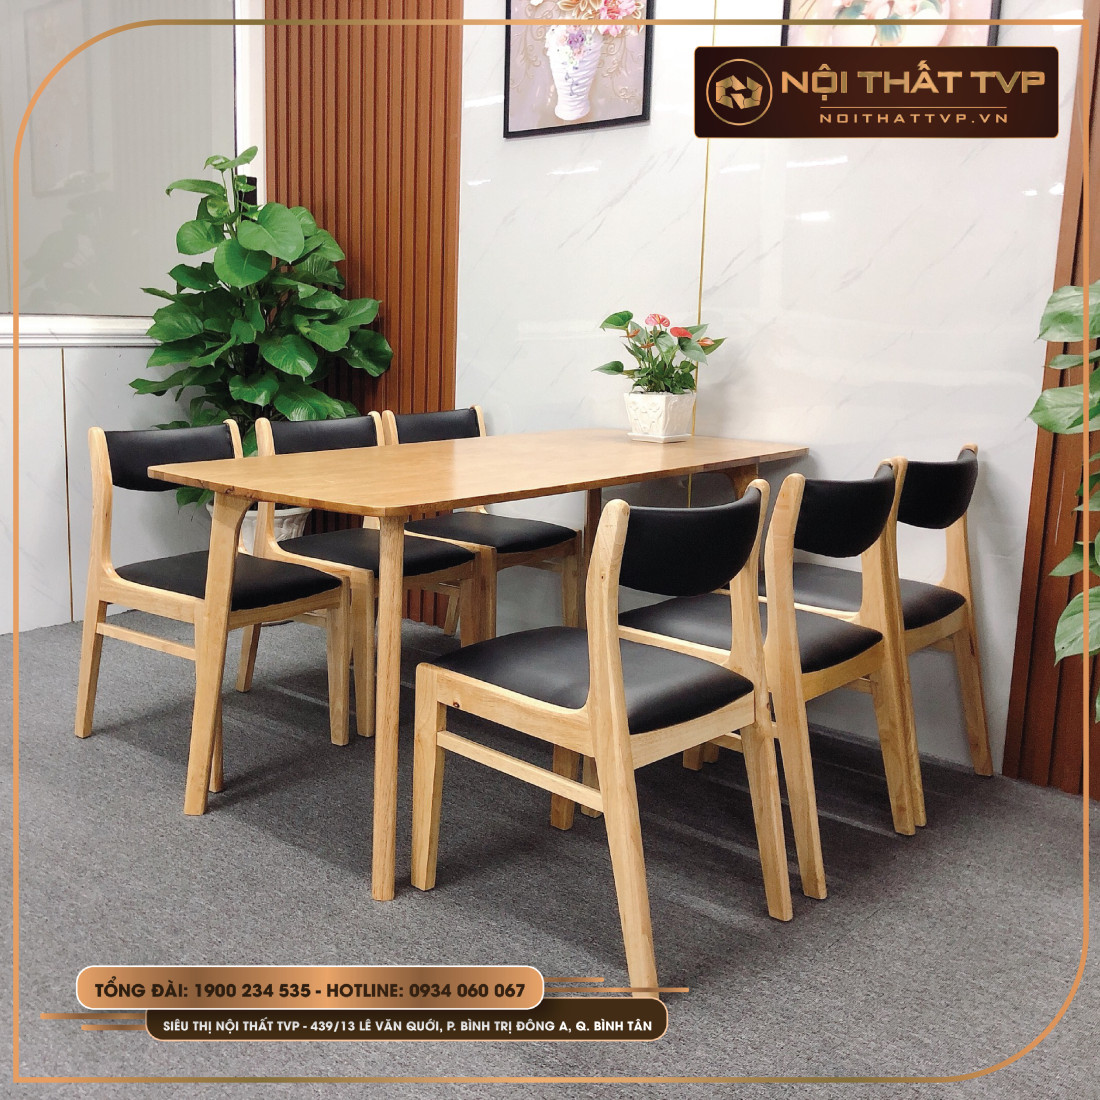 Chất lượng đến từng chi tiết ở các bộ bàn ăn 6 ghế gỗ tự nhiên đa dạng và phù hợp